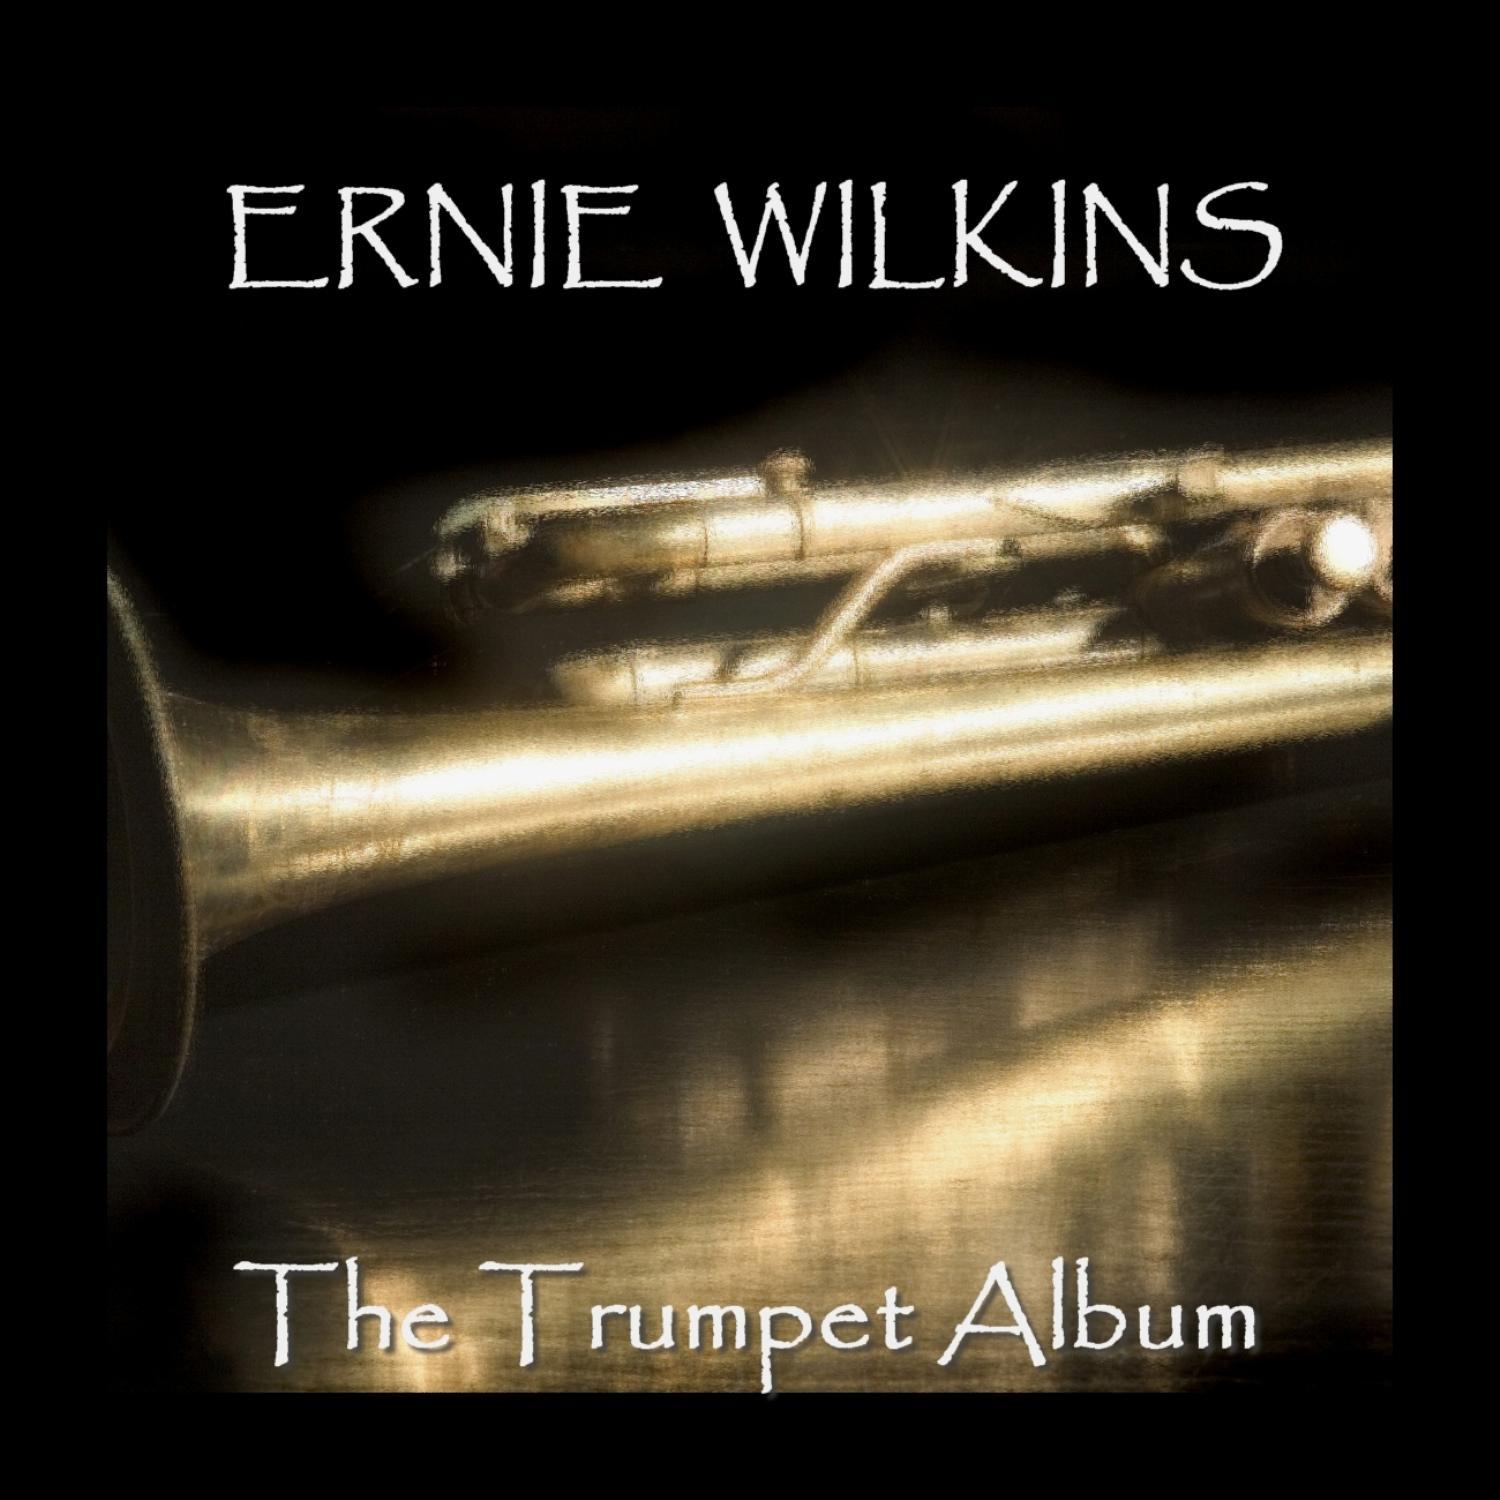 The Trumpet Album